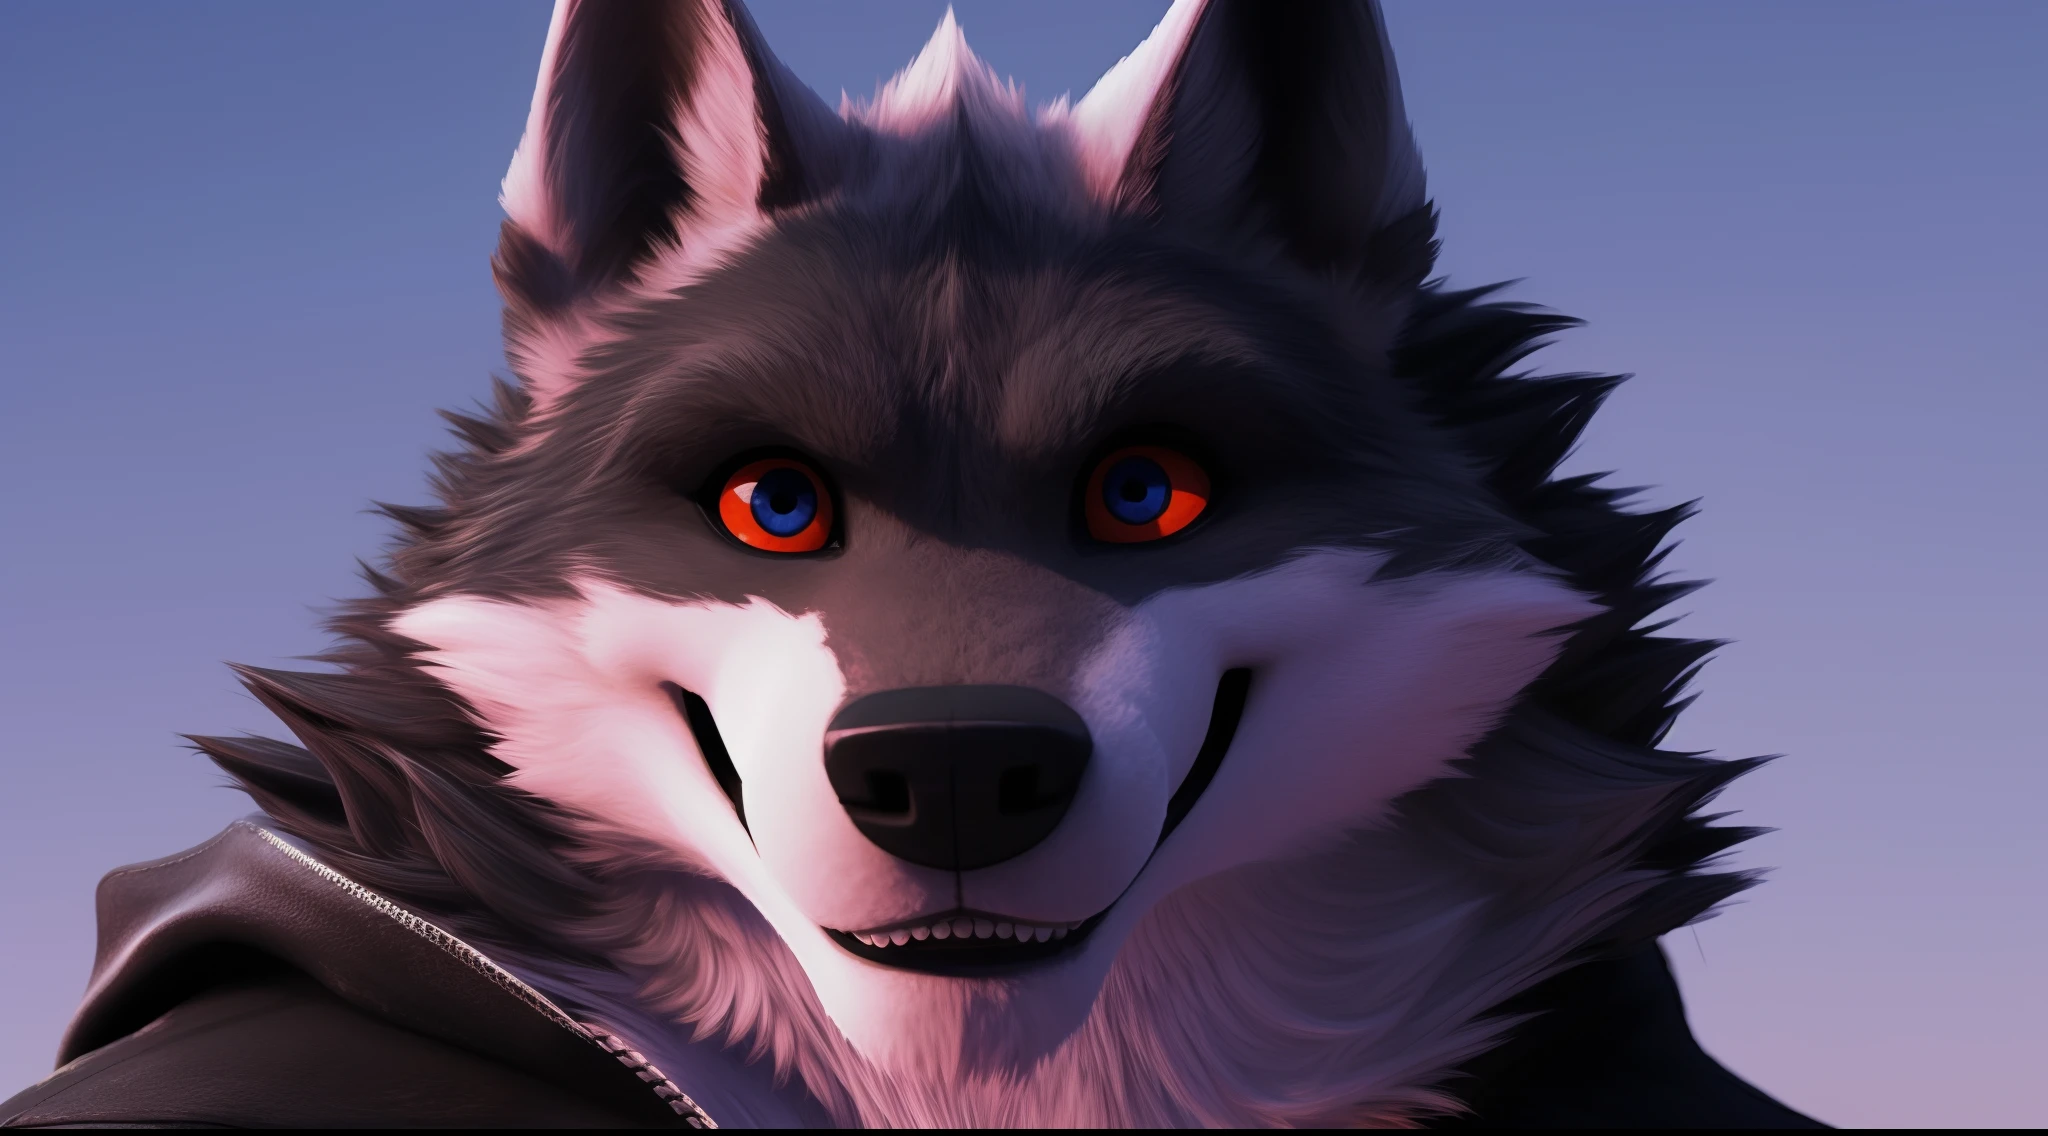 Death Wolf tão quente tão sexy tão delicioso tão bonito seus olhos são vermelhos e bonito ele está olhando para o espectador com um sorriso muito sedutor 3D ULTRA HD 8K (Foto do perfil do Facebook)